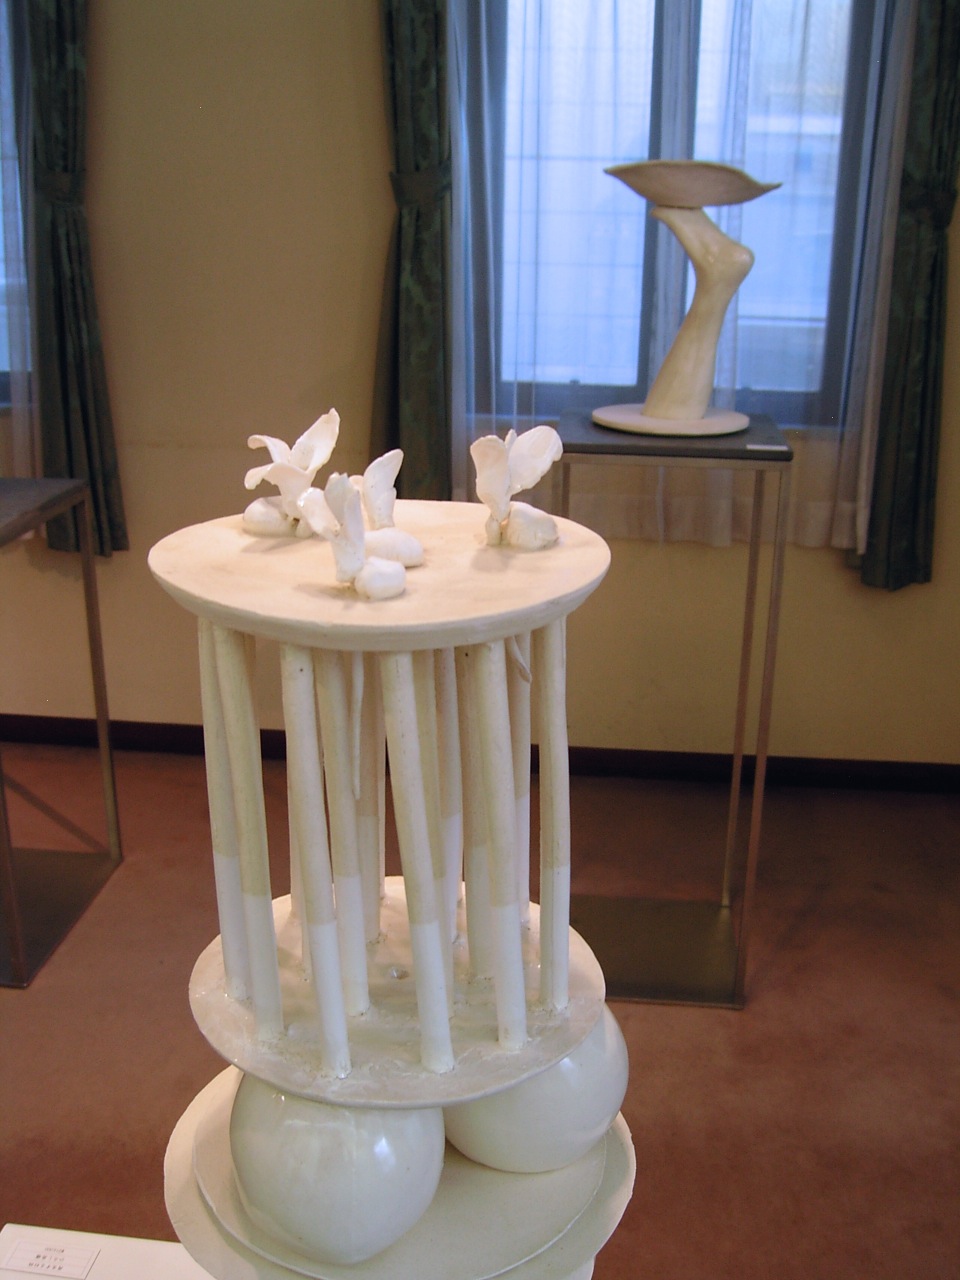 2019年に日本橋壺中居にて行われたTime Crossing展で展示された高橋浩史の彫刻作品